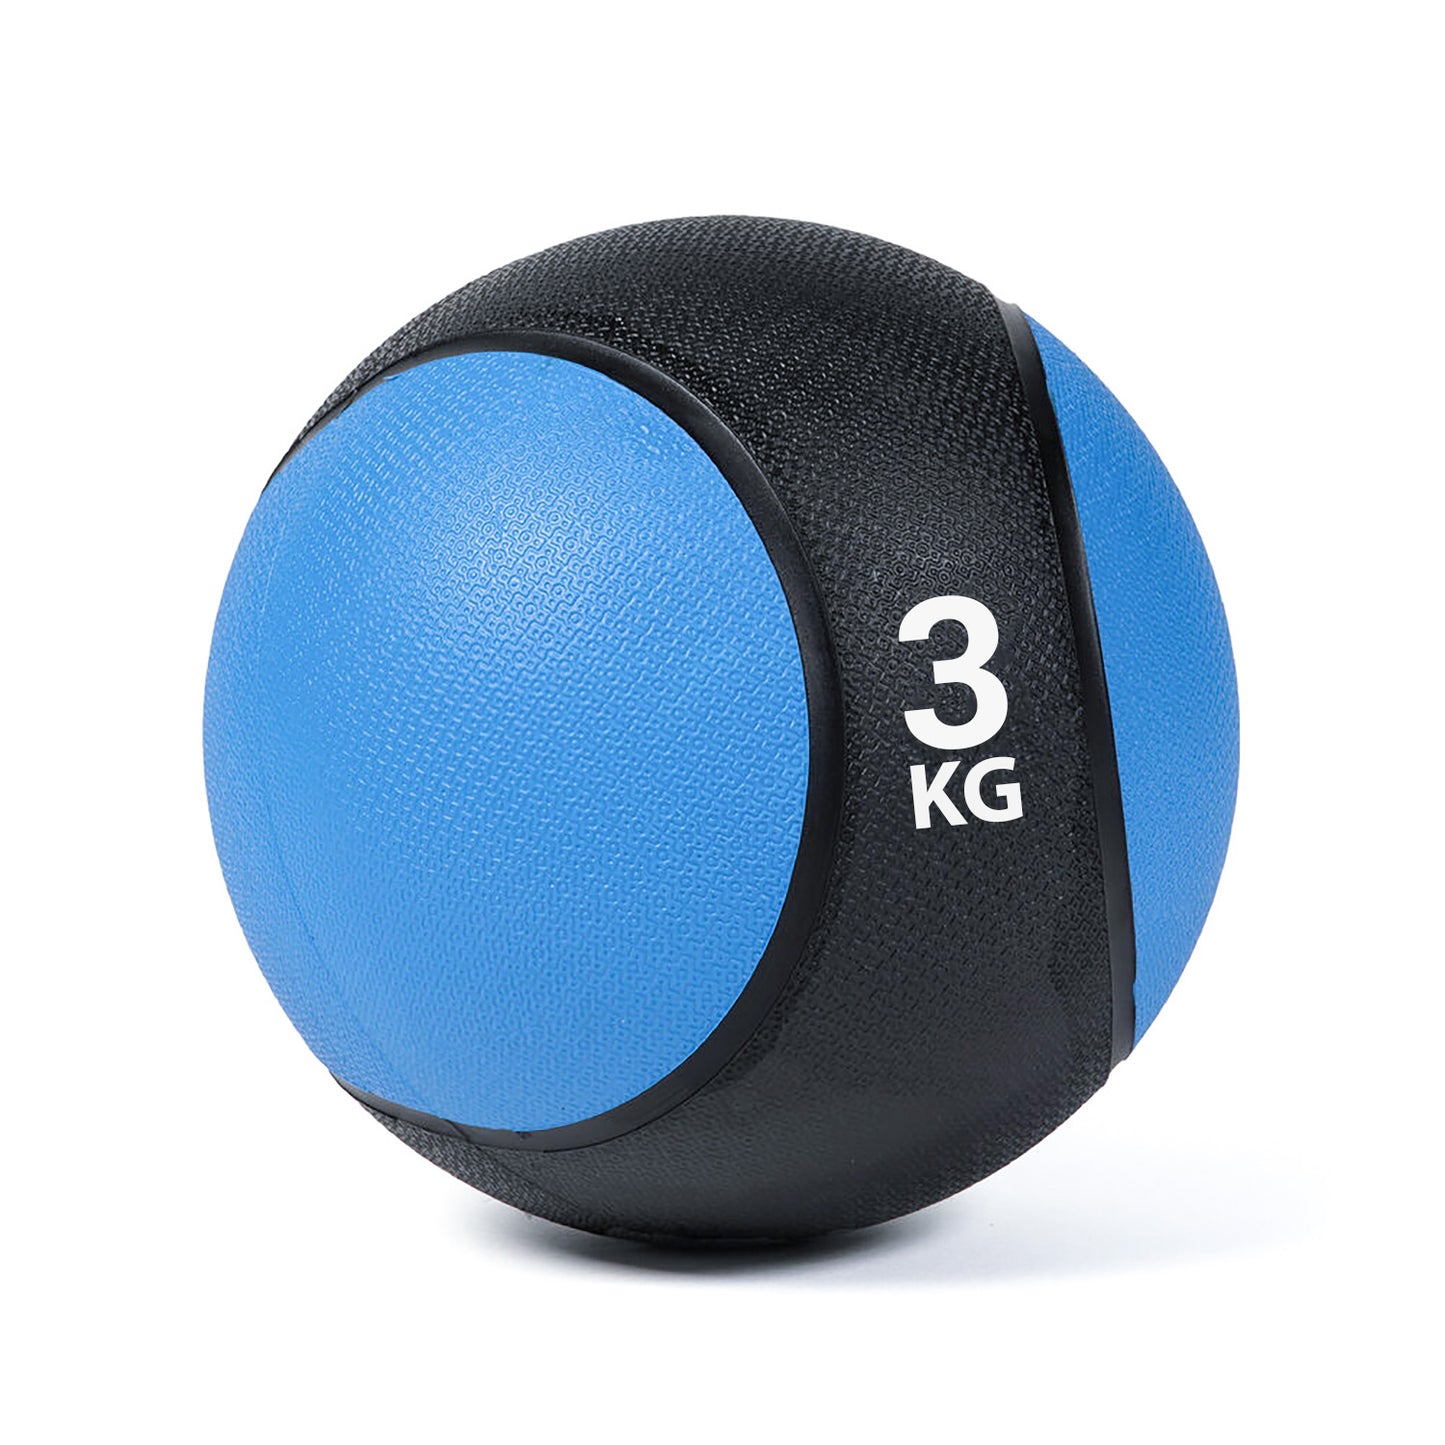 كرة طبية من المطاط لاعادة التأهيل و اللياقة البدنية - لون اسود و ازرق - وزن 3 كيلو جرام - Kanteen - كانتين